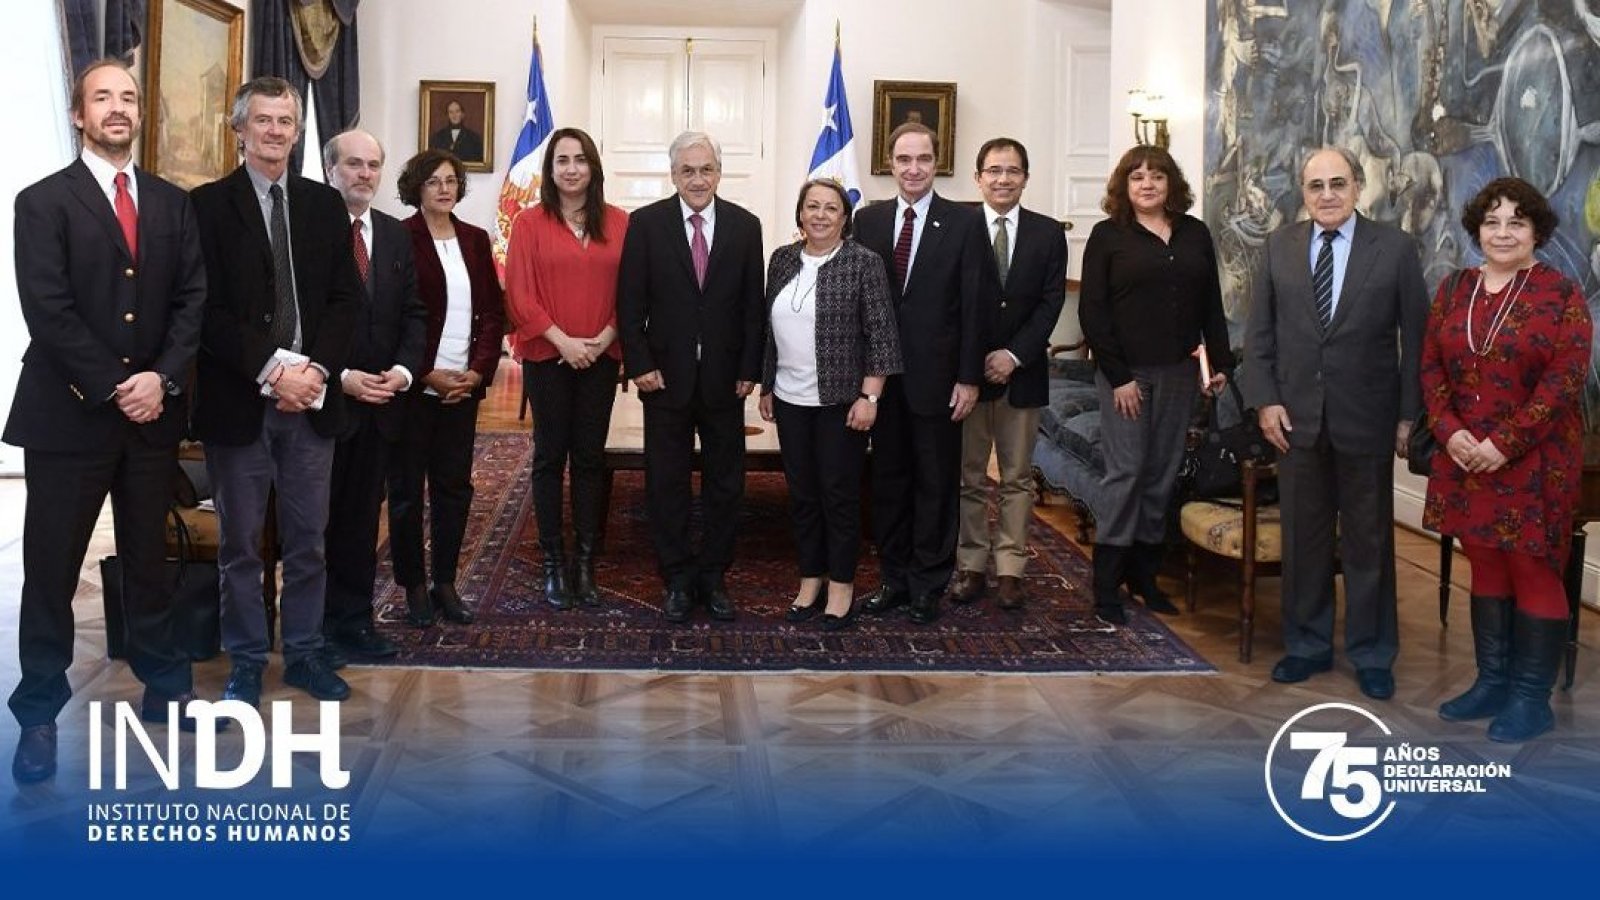 INDH reconoce labor de expresidente Piñera a la restauración de la democracia